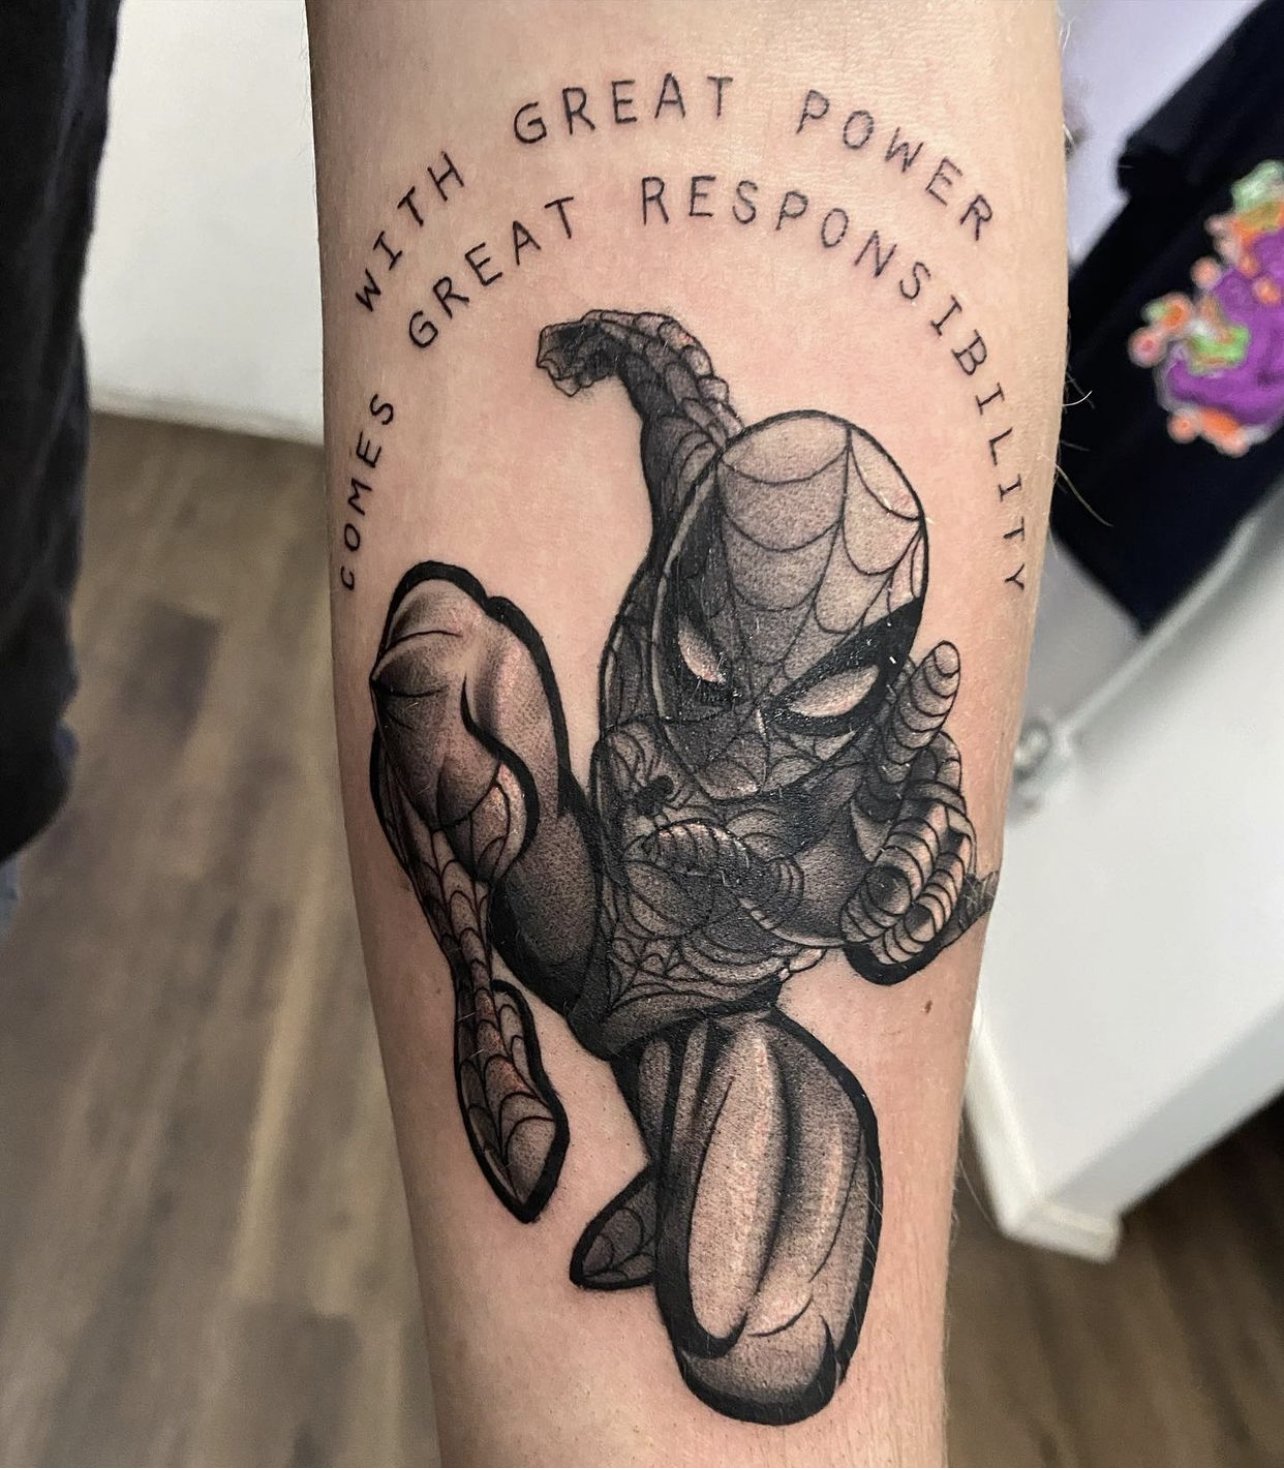 Emily Schoustra — Grape Ape Tattoo